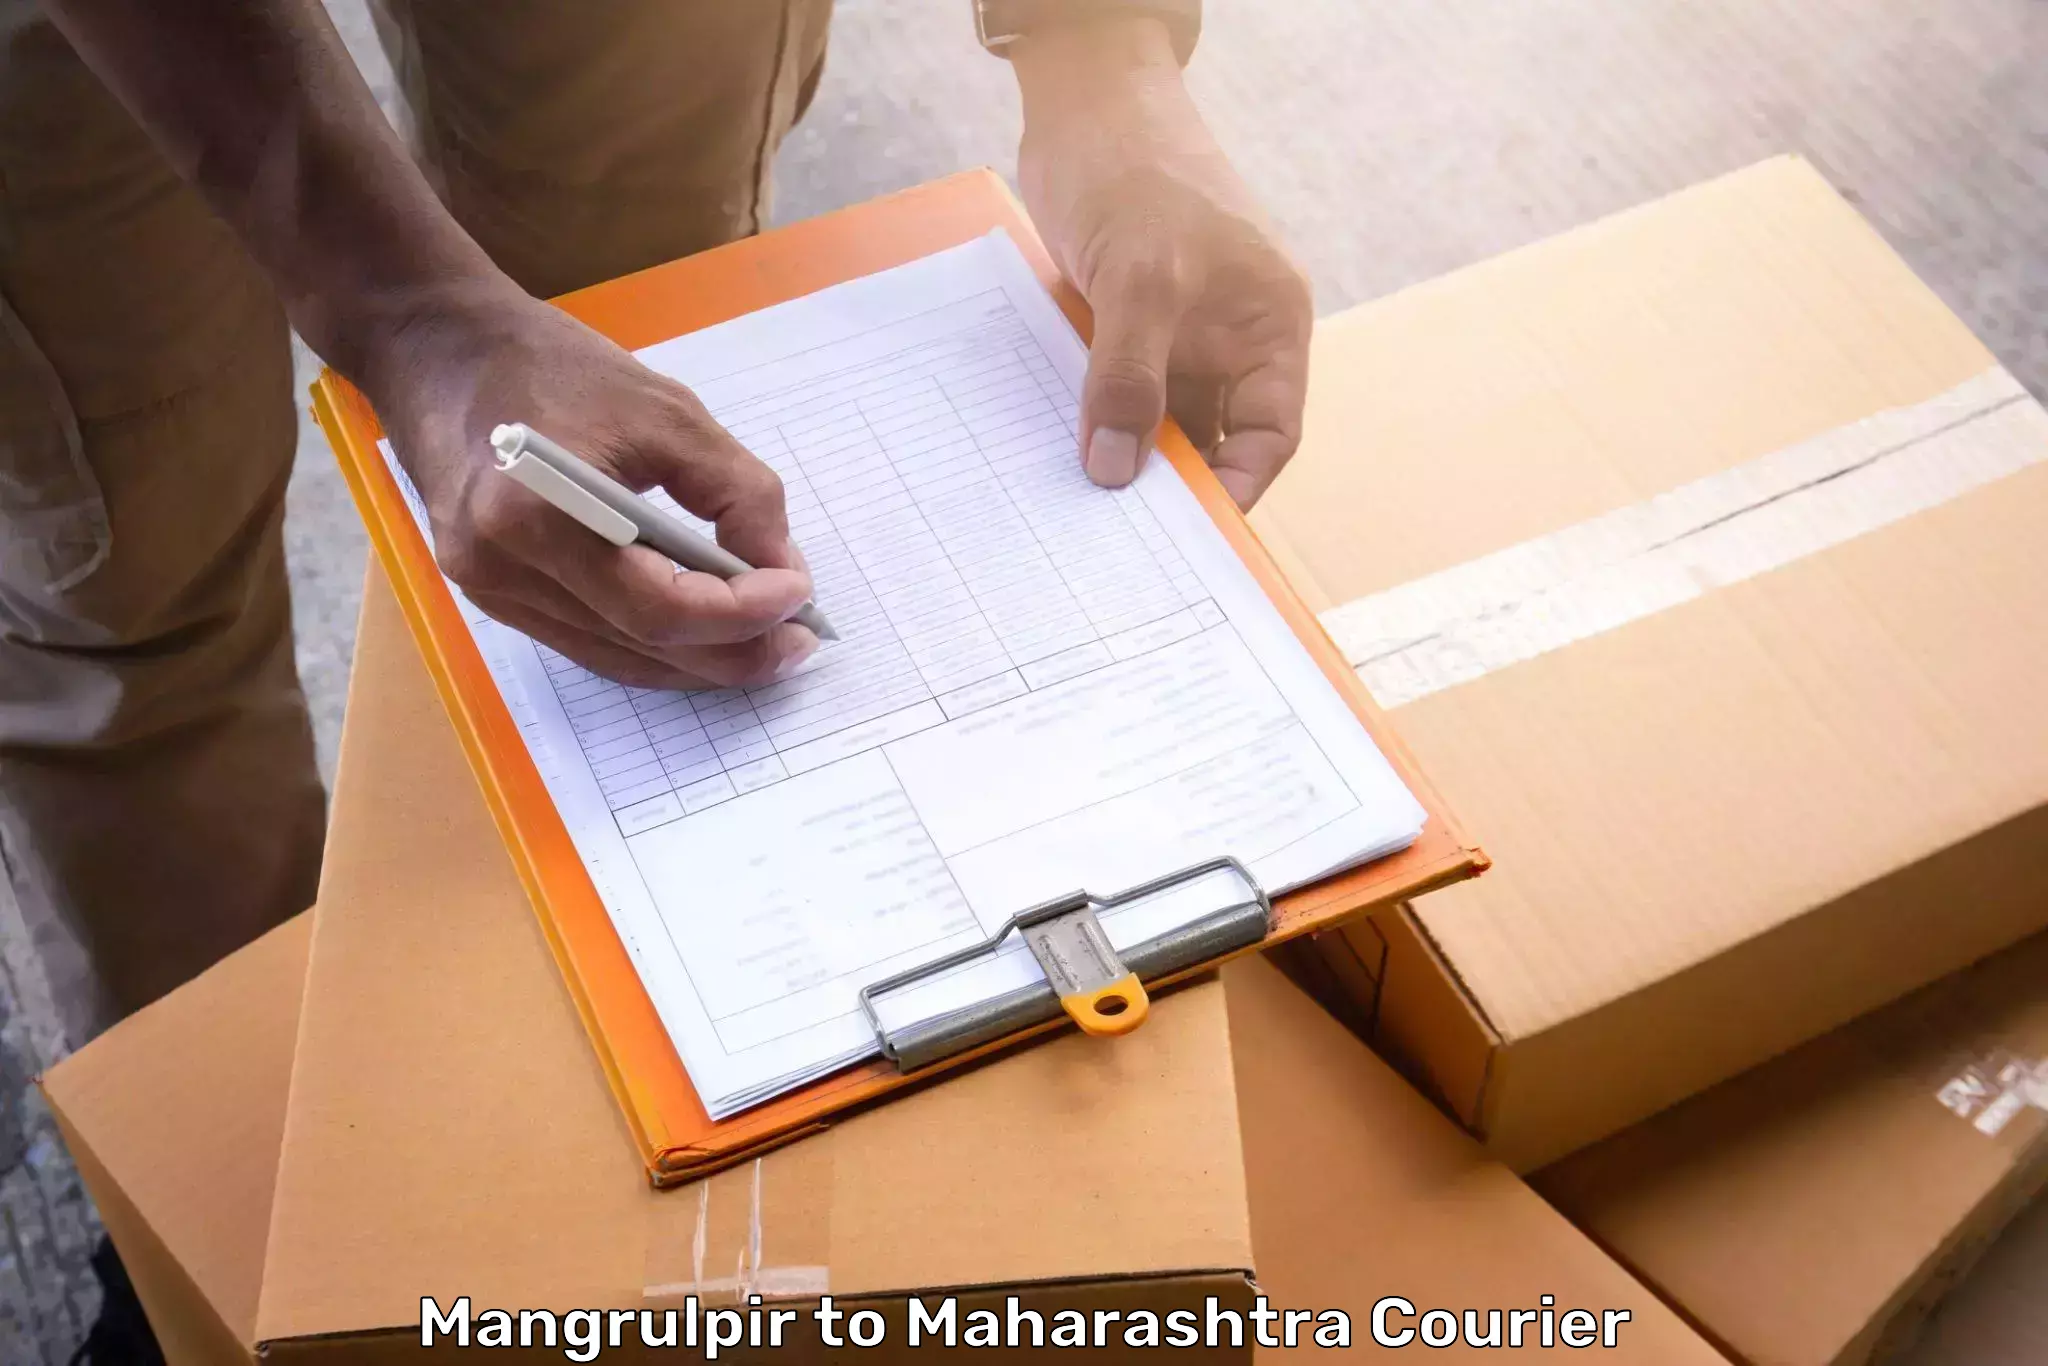 Luggage transport guidelines Mangrulpir to Maharashtra